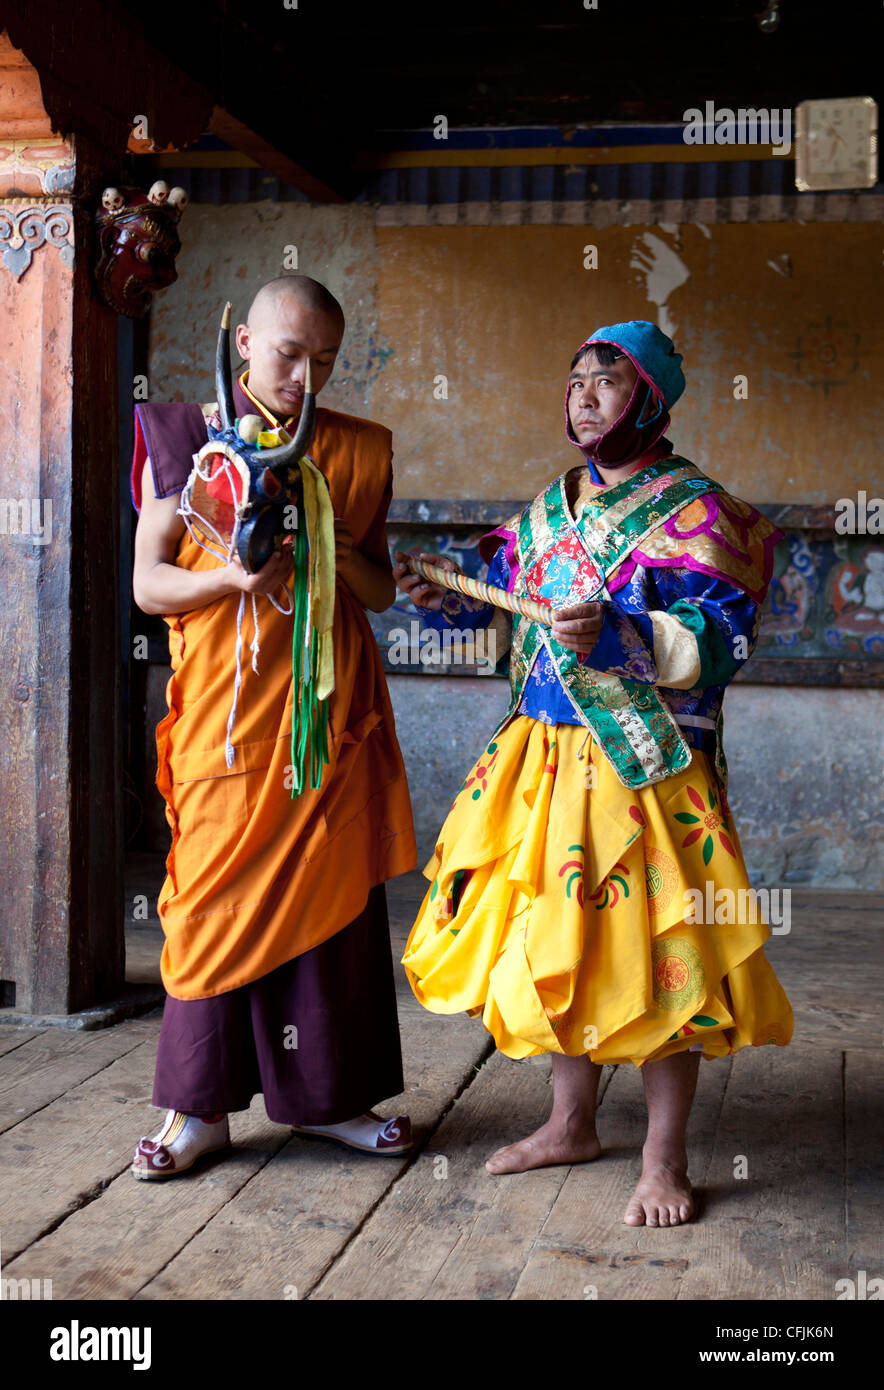 Le moine bouddhiste en costumes colorés, Jakar, Bumthang, Bhoutan, Asie Banque D'Images